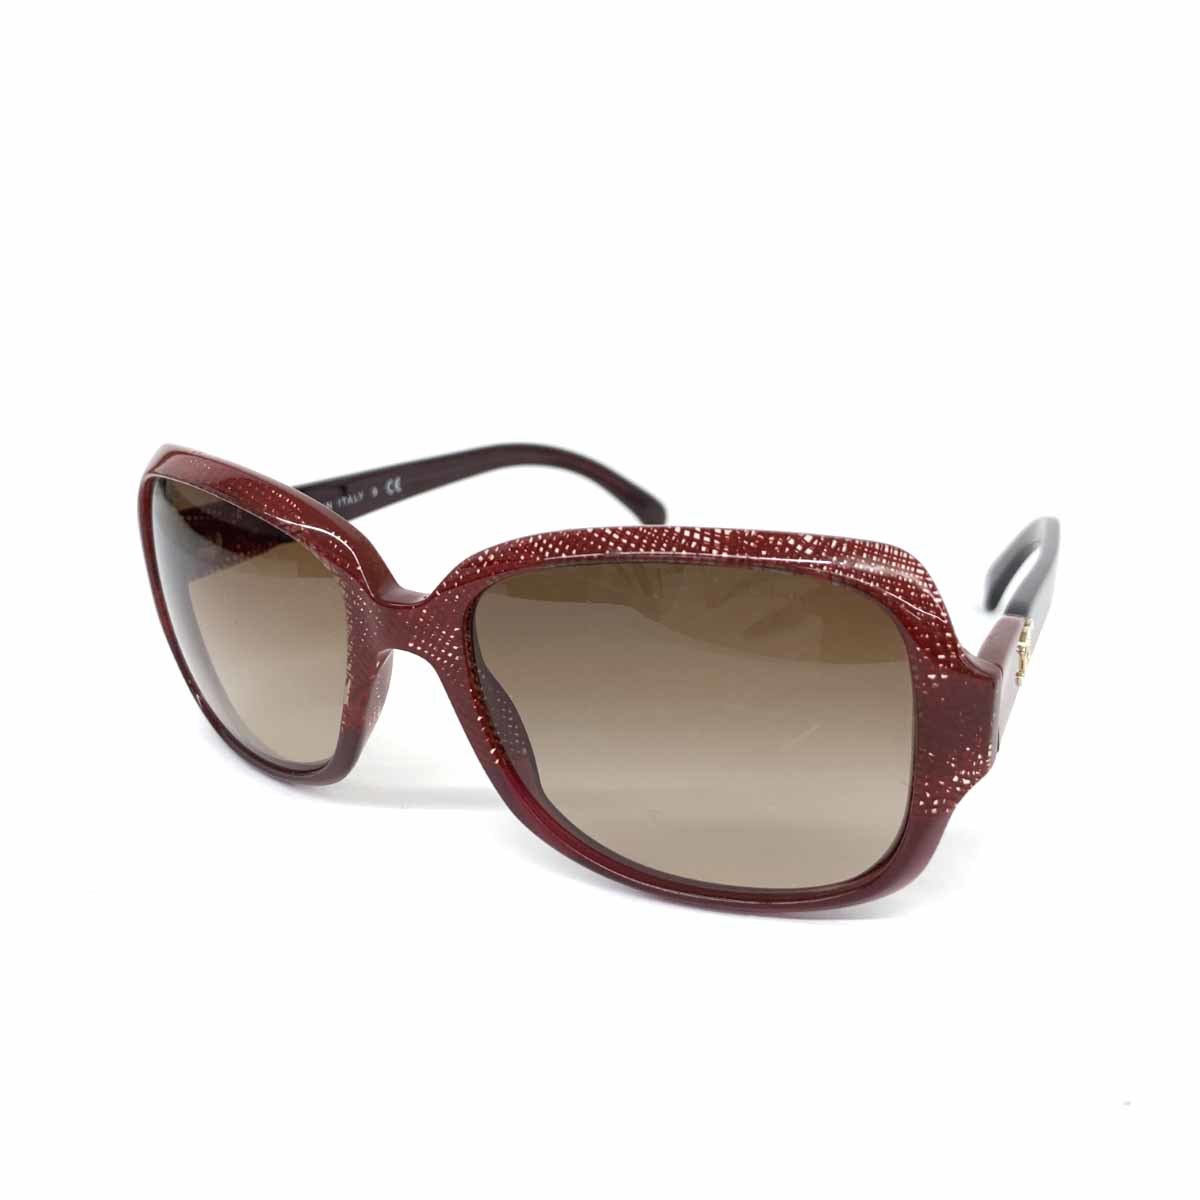 ◆CHANEL シャネル サングラス◆5177 ボルドー グラデーション レディース イタリア製 sunglasses 服飾小物